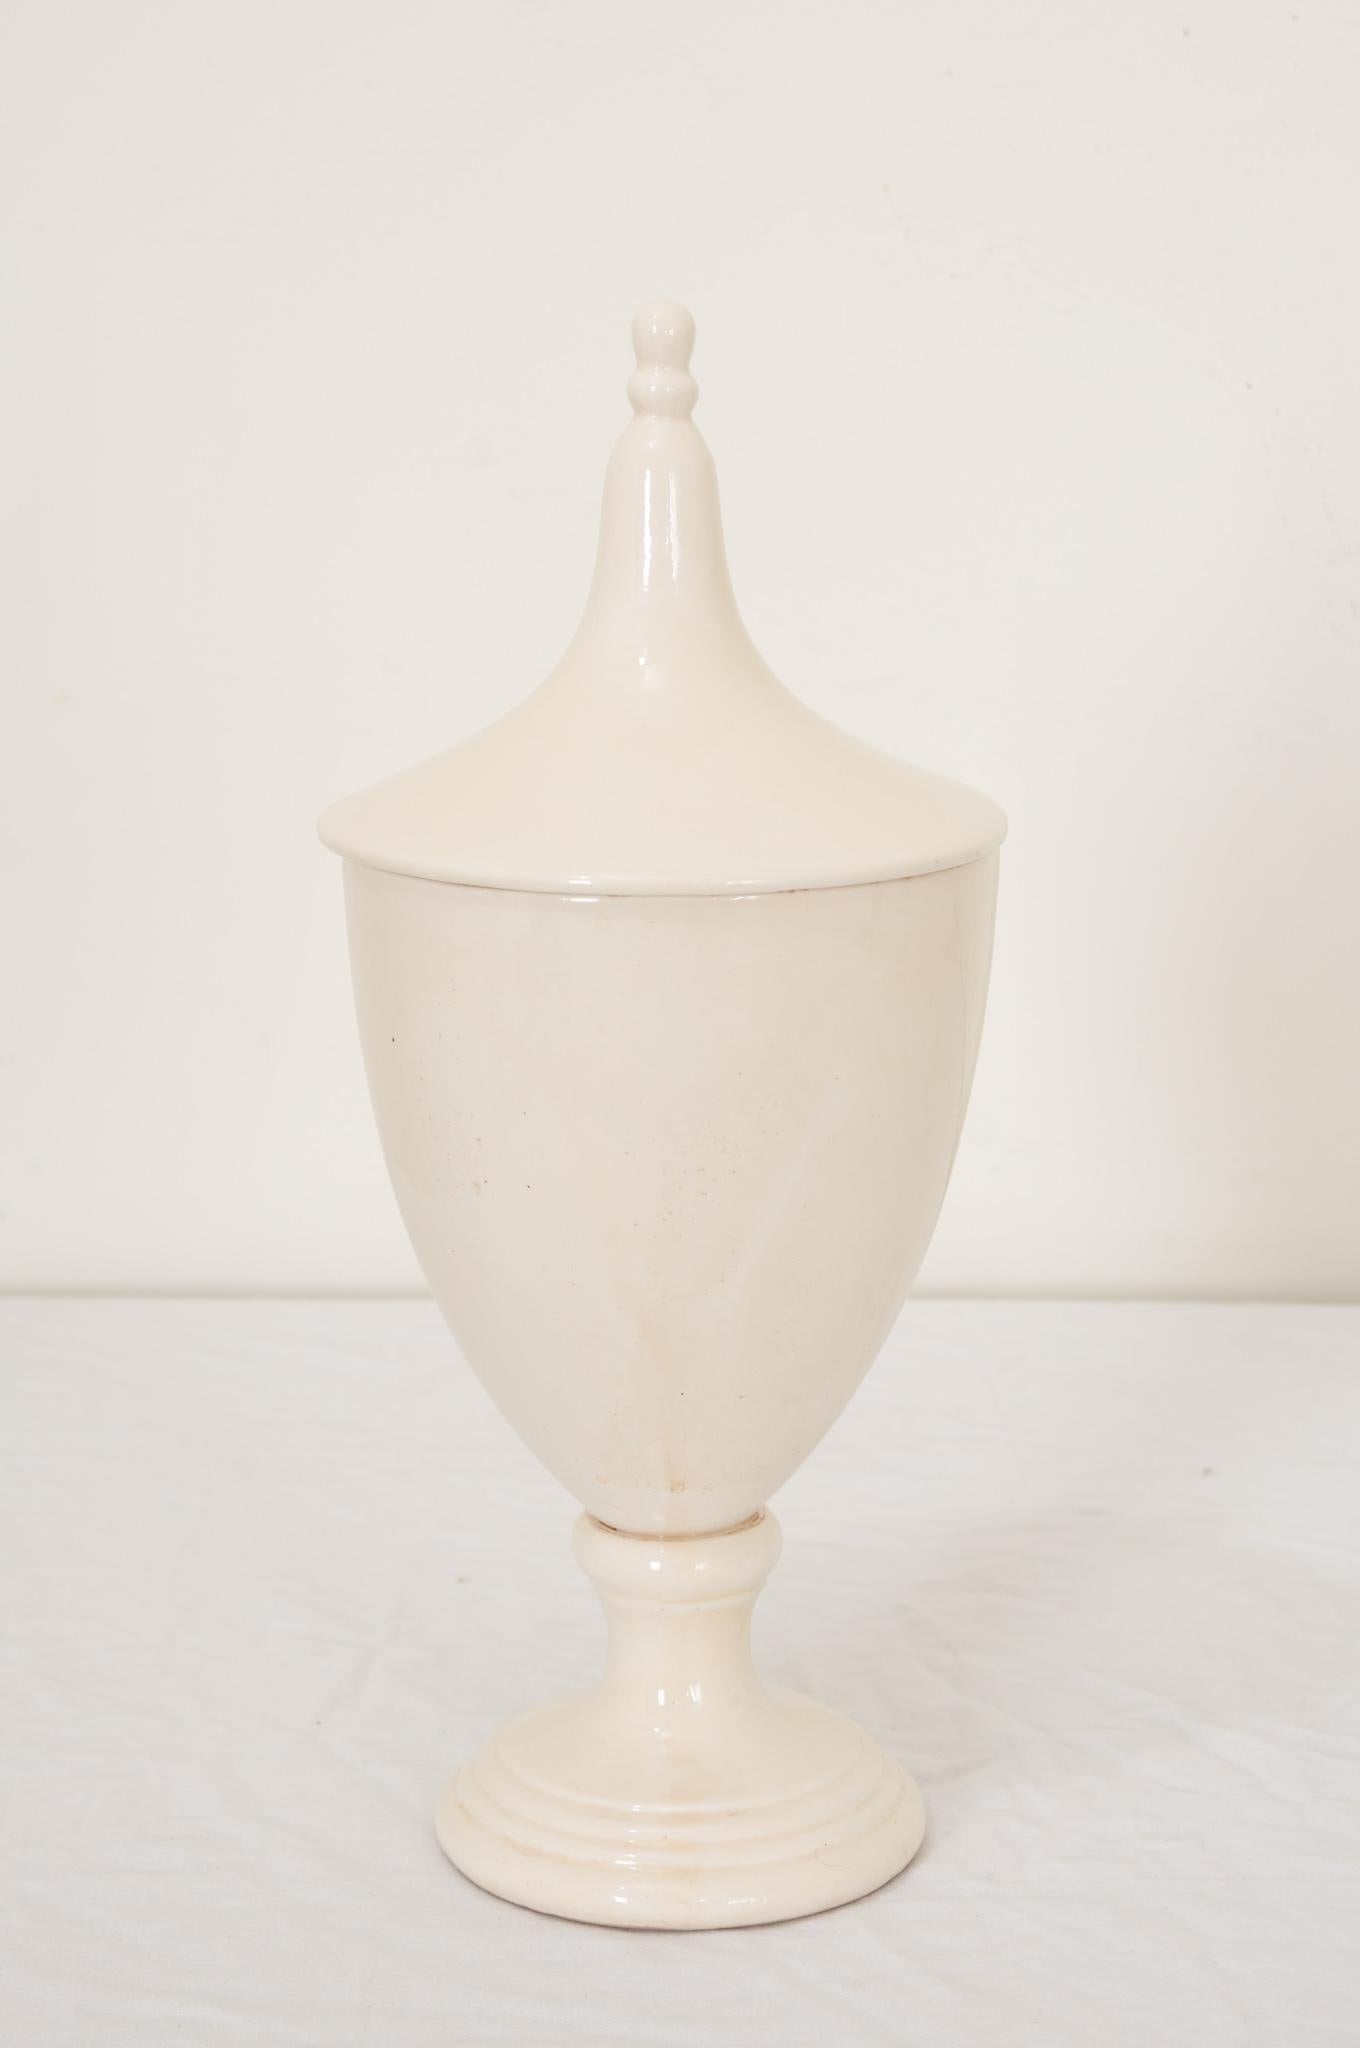 Pot d'apothicaire ou d'herboriste anglais du 19e siècle en céramique blanche en forme d'urne classique. Les pots étaient utilisés par les apothicaires dans les pharmacies et les dispensaires dans les hôpitaux et les monastères. Les apothicaires